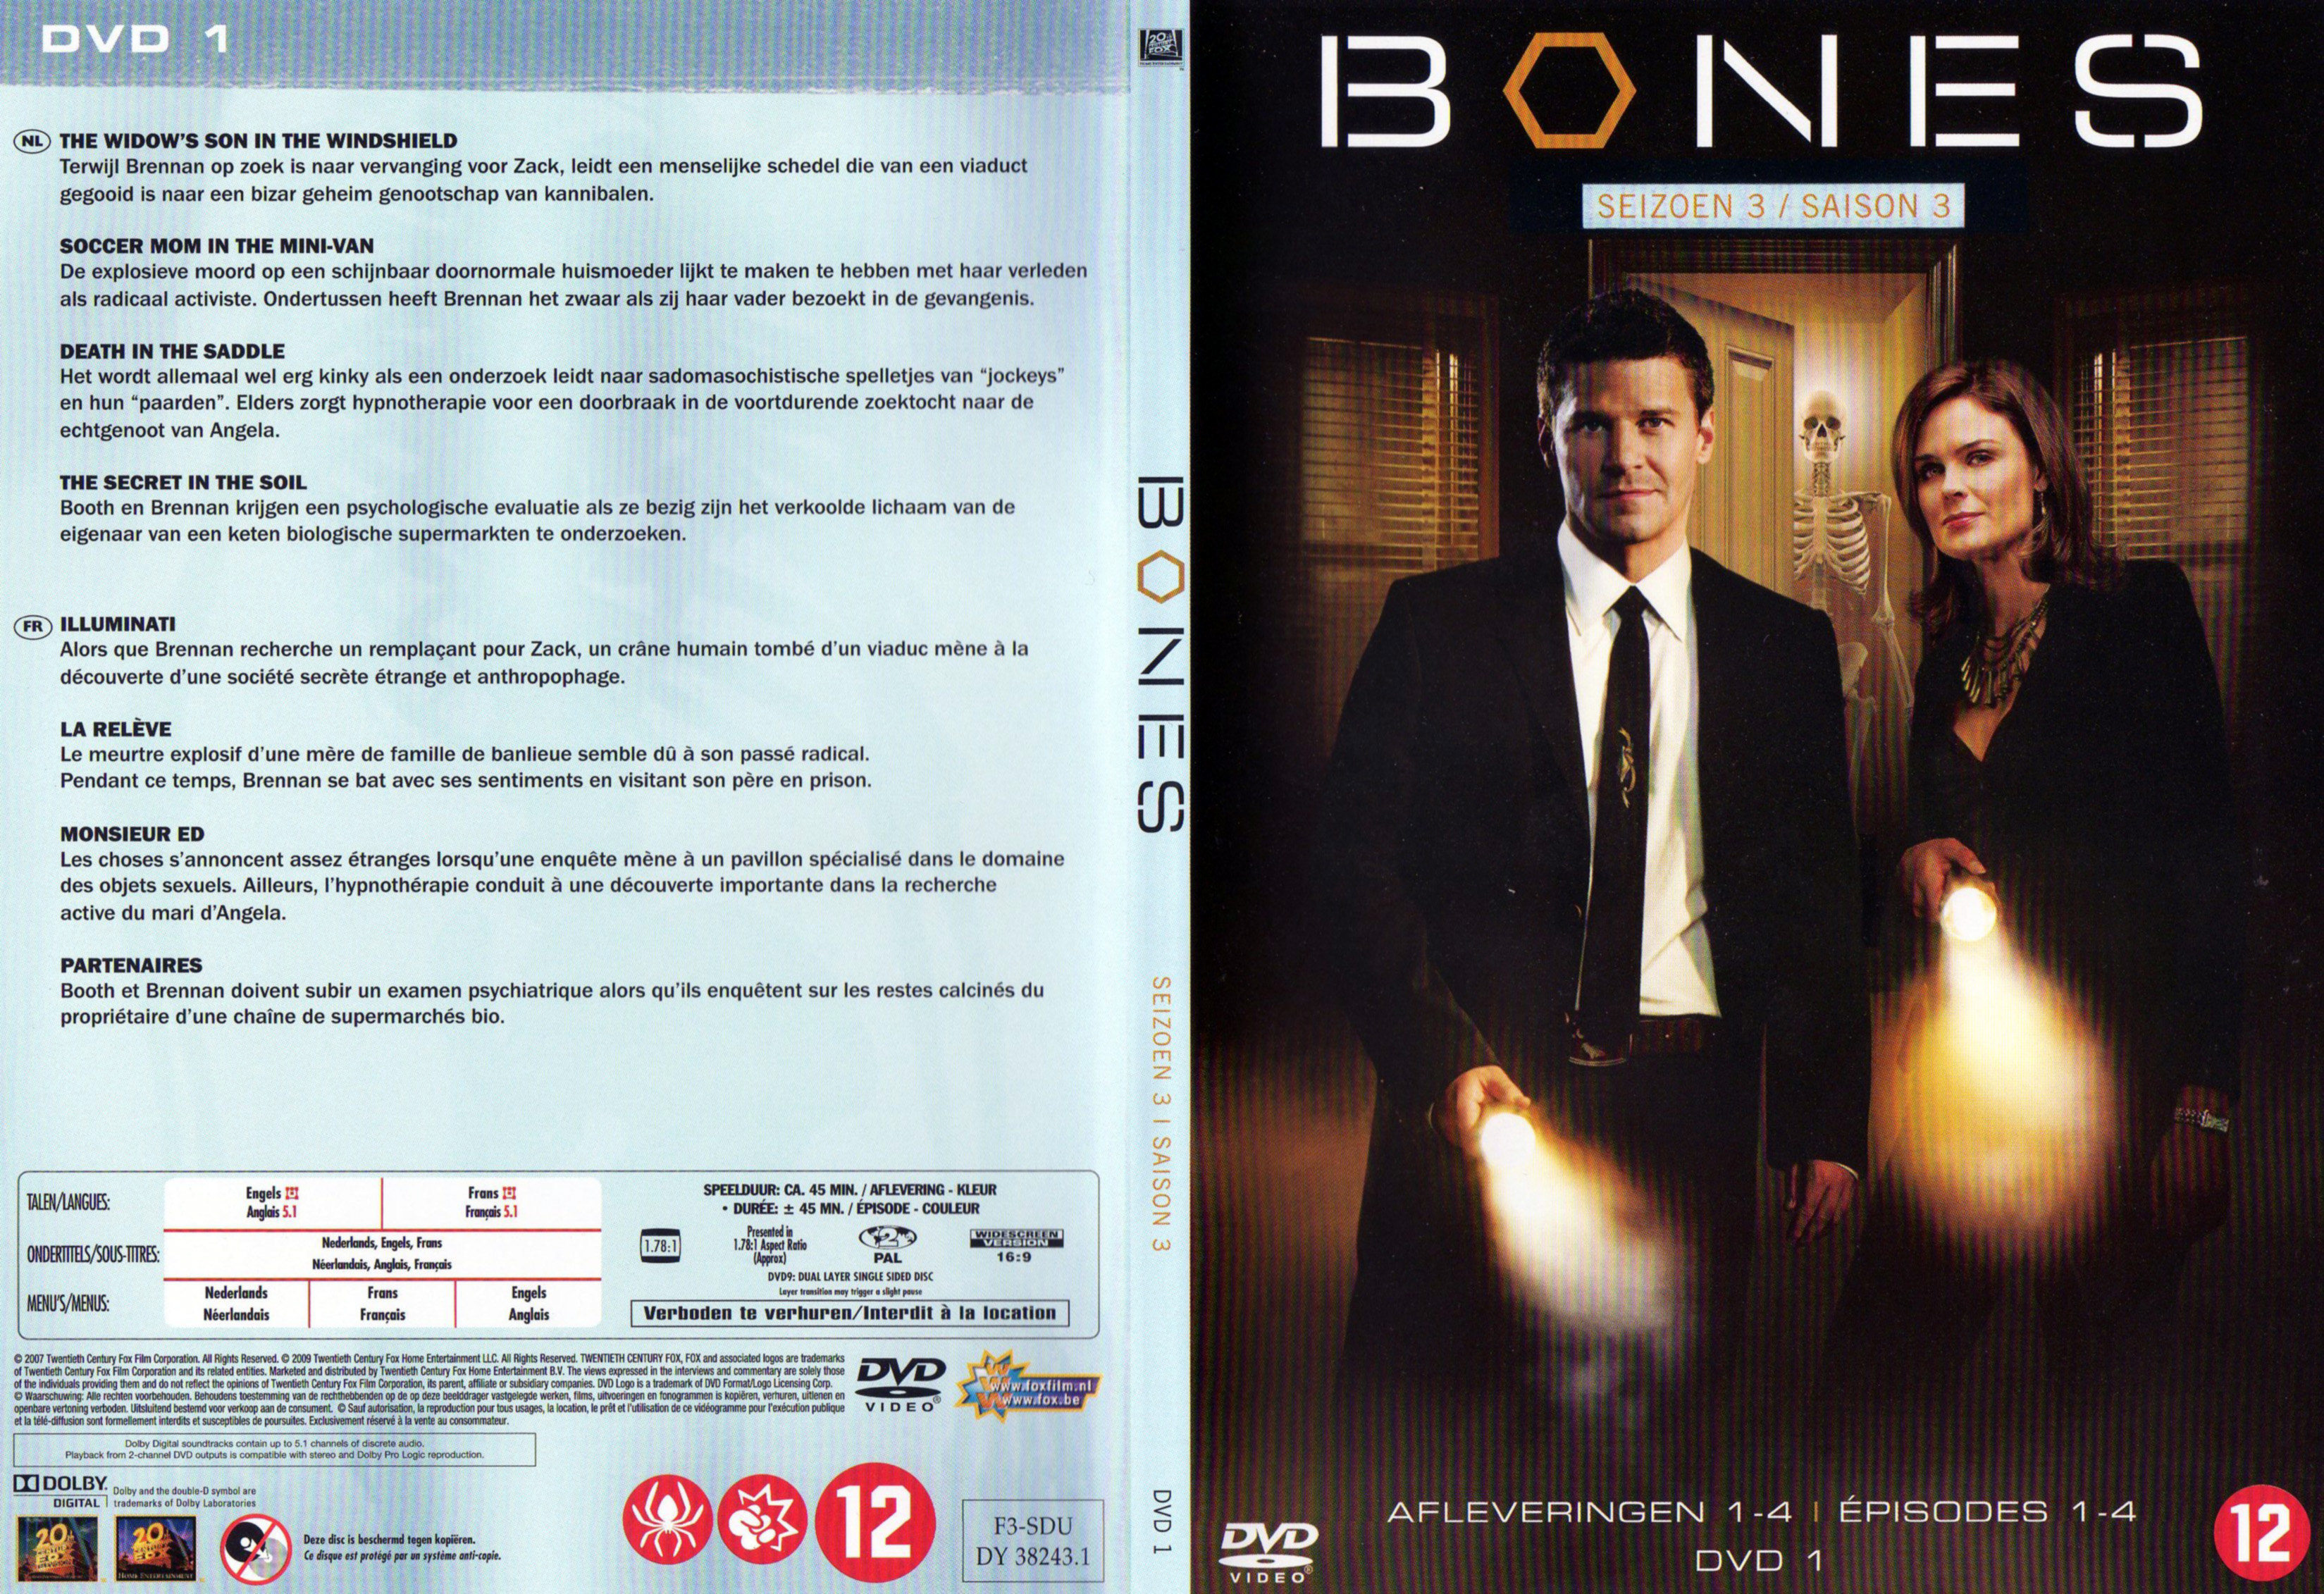 Jaquette DVD Bones Saison 3 DVD 1 v2